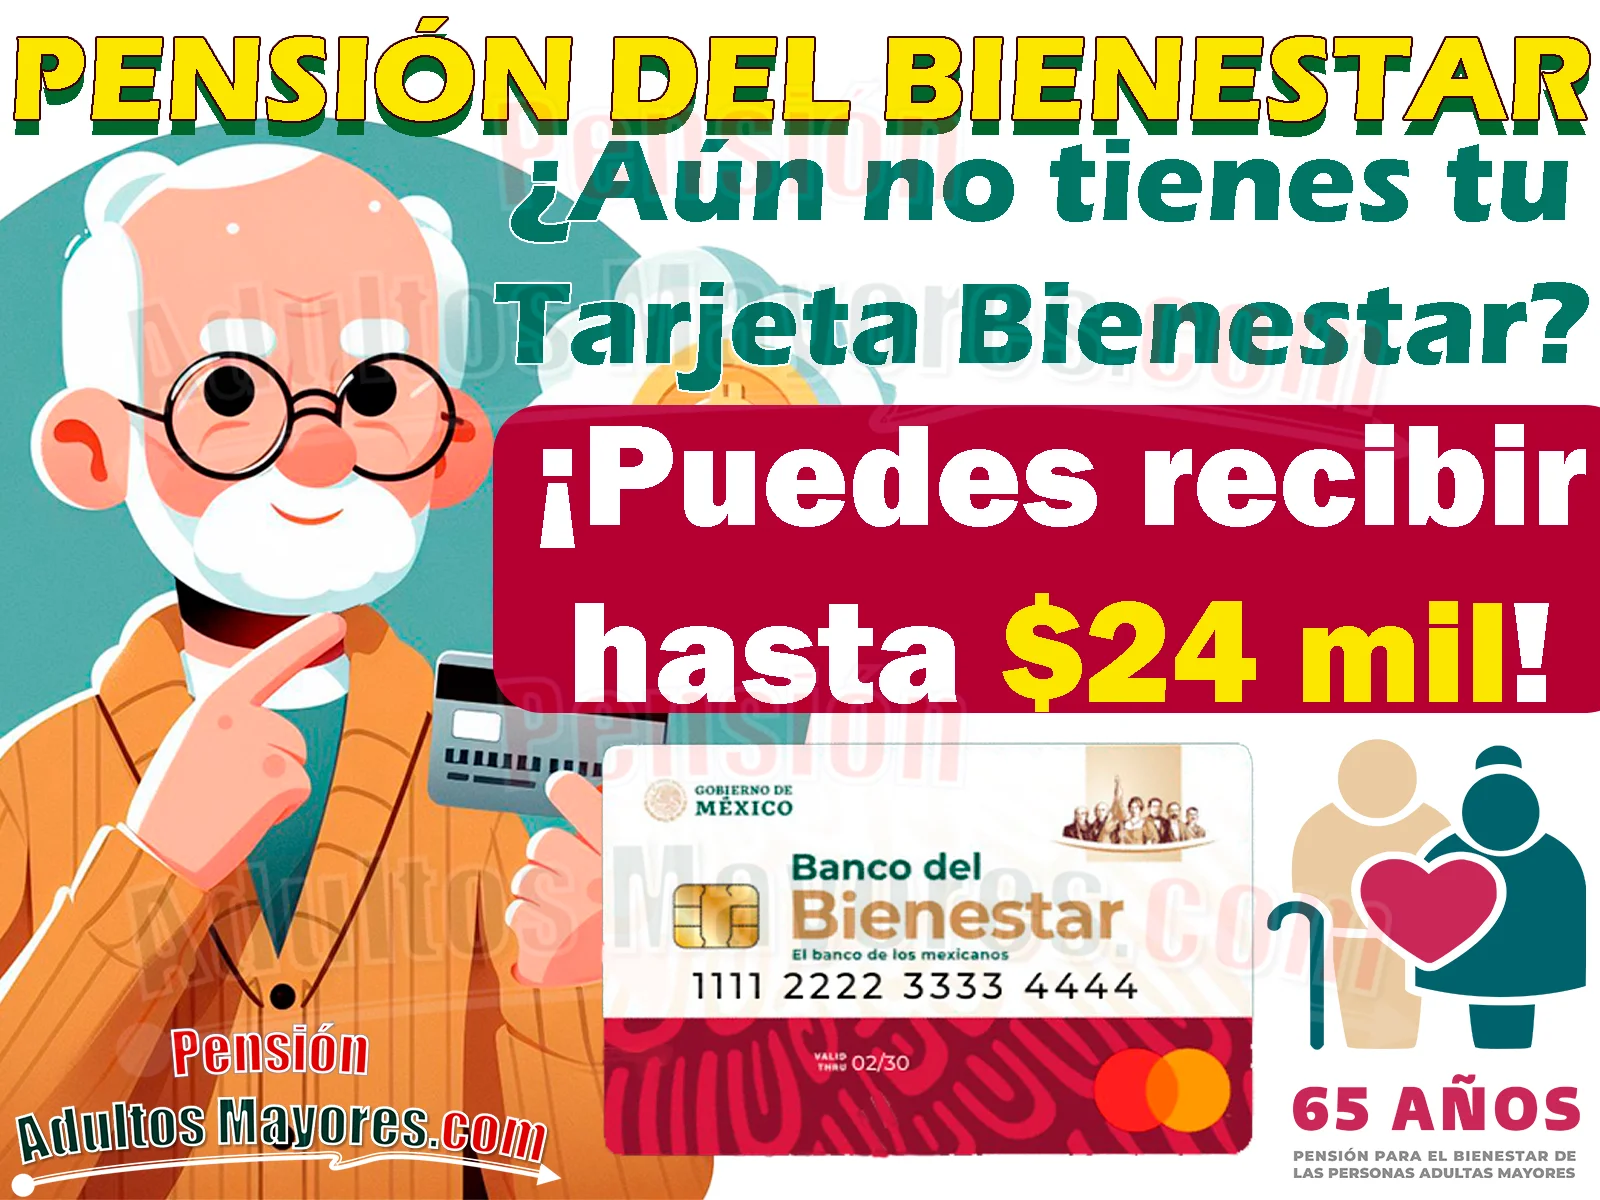 ¿Solicitaste tu Pensión del Bienestar en Diciembre y aún no cuentas con tu Tarjeta del Bienestar? ¡Podrías recibir hasta $24 mil pesos!